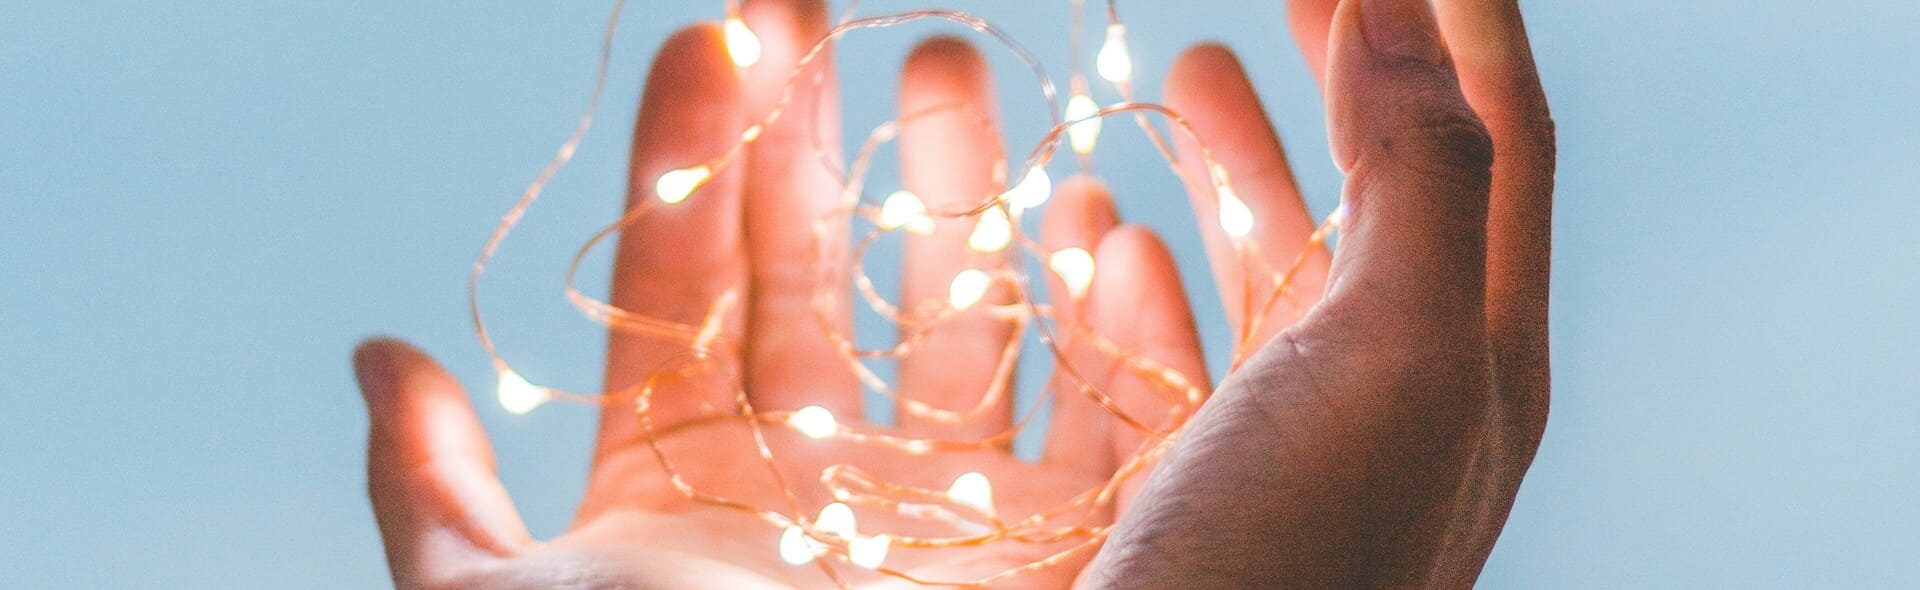 leuchtende Lichterkette in Händen 